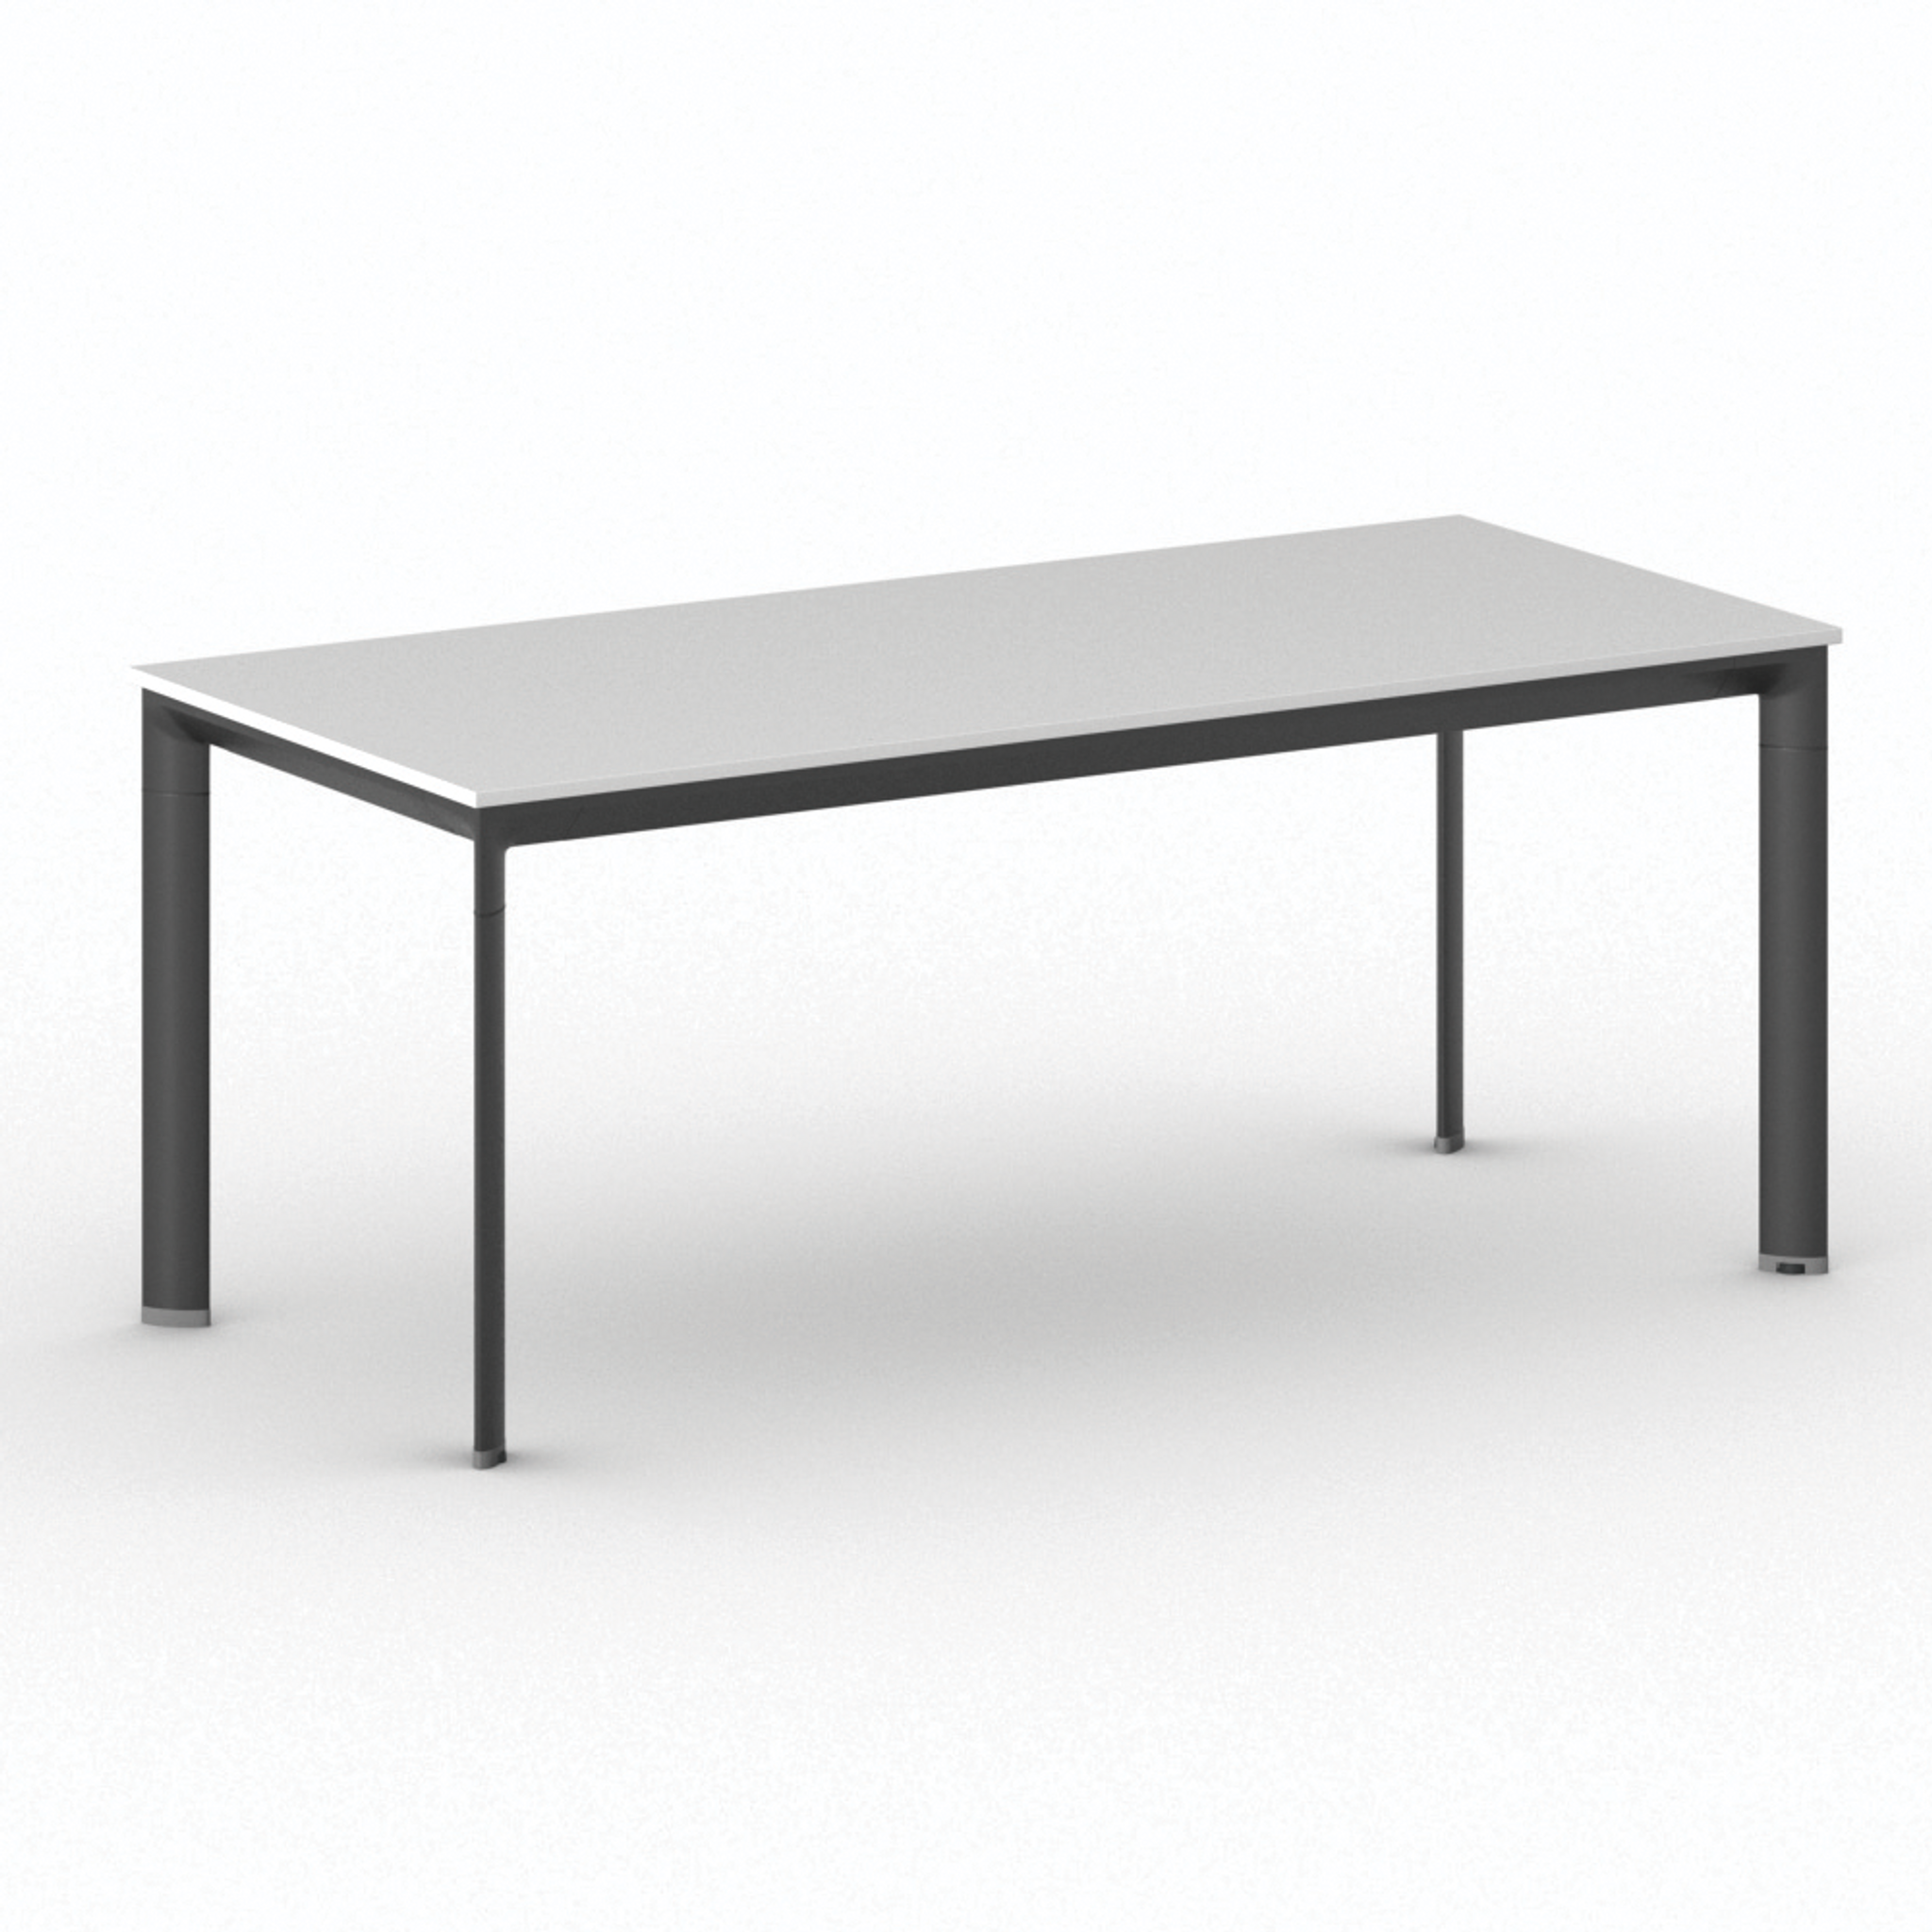 Stół konferencyjny PRIMO INVITATION 1800 x 800 x 740 mm, biały